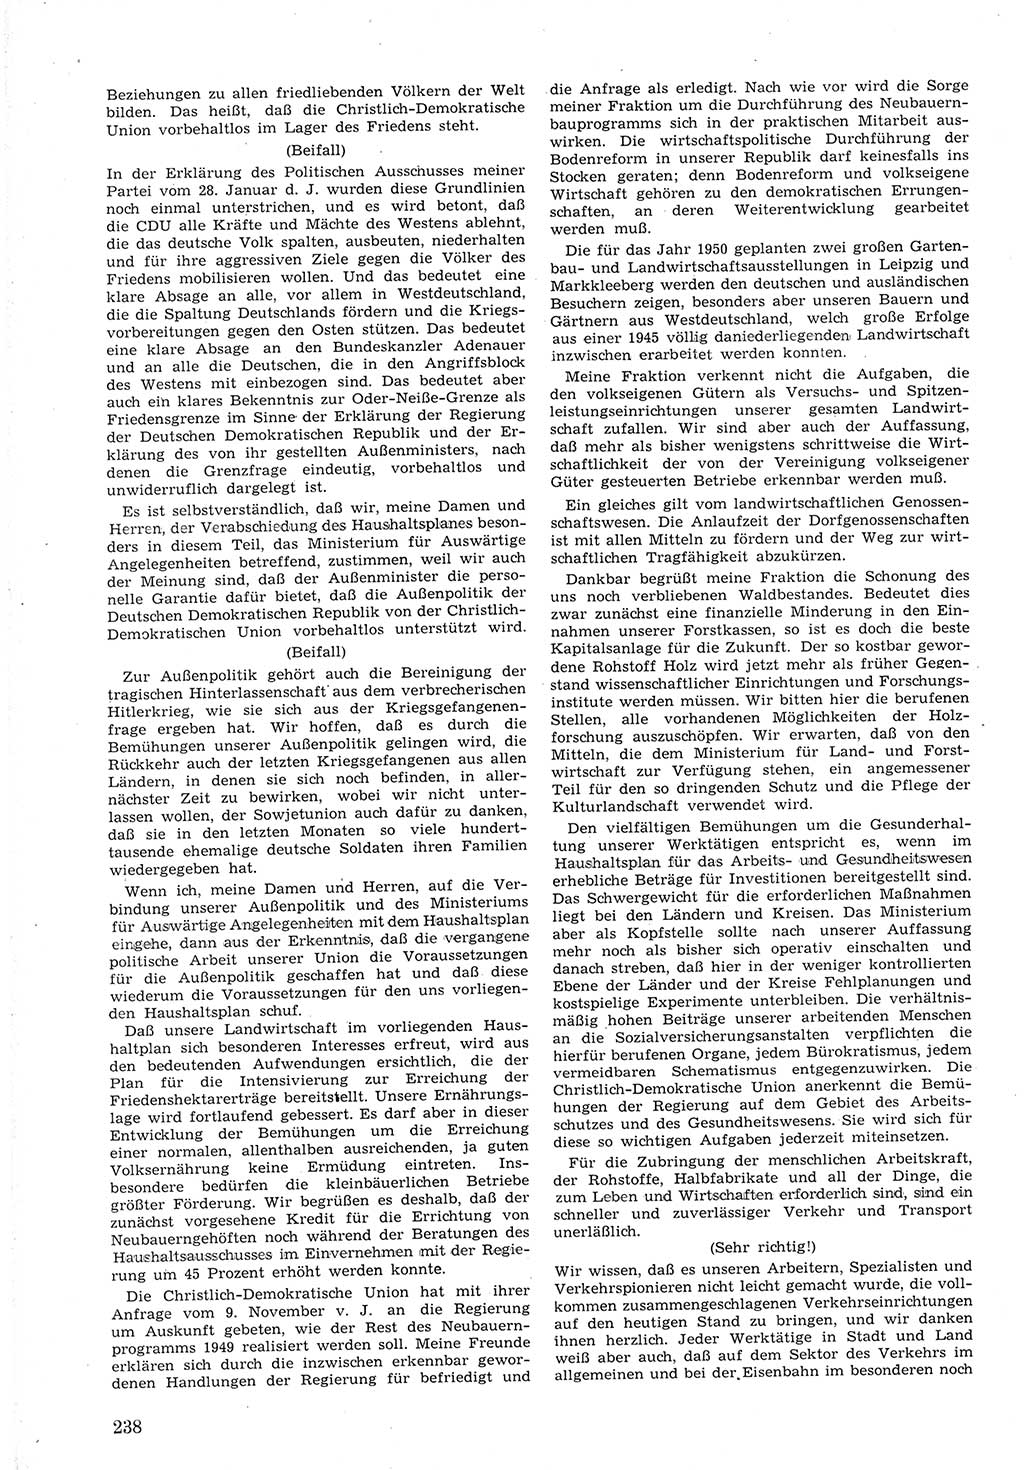 Provisorische Volkskammer (VK) der Deutschen Demokratischen Republik (DDR) 1949-1950, Dokument 252 (Prov. VK DDR 1949-1950, Dok. 252)